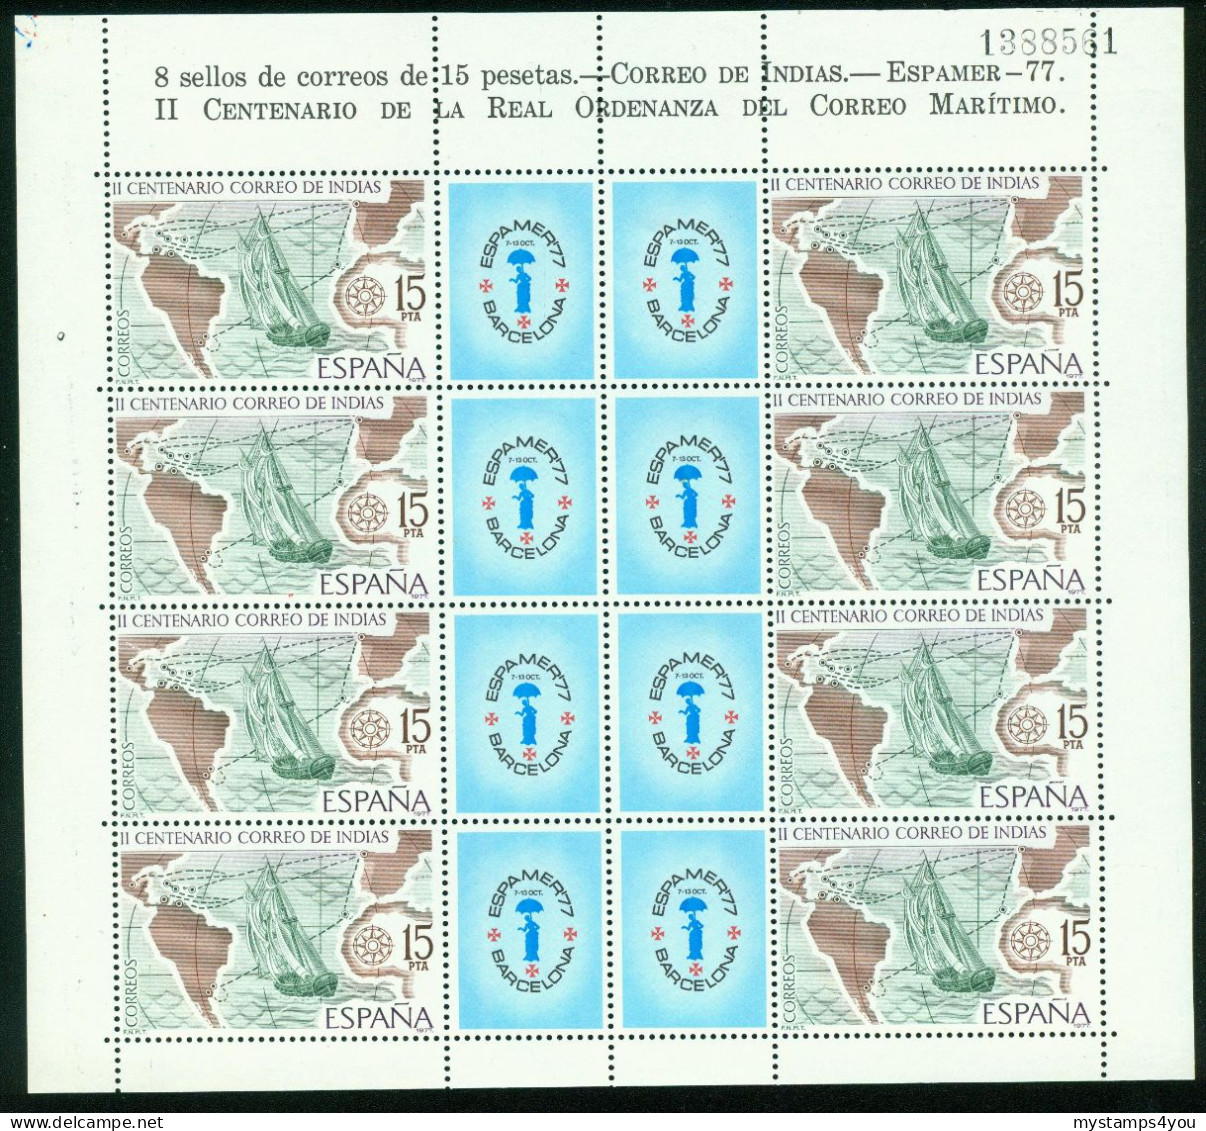 Bm Spain 1977 MiNr 2330 Kleinbogen Sheet MNH | Bicent Of Mail To The Indies. "Espamer 77" Stamp Exn Barcelona #bog-0134 - Blocs & Feuillets